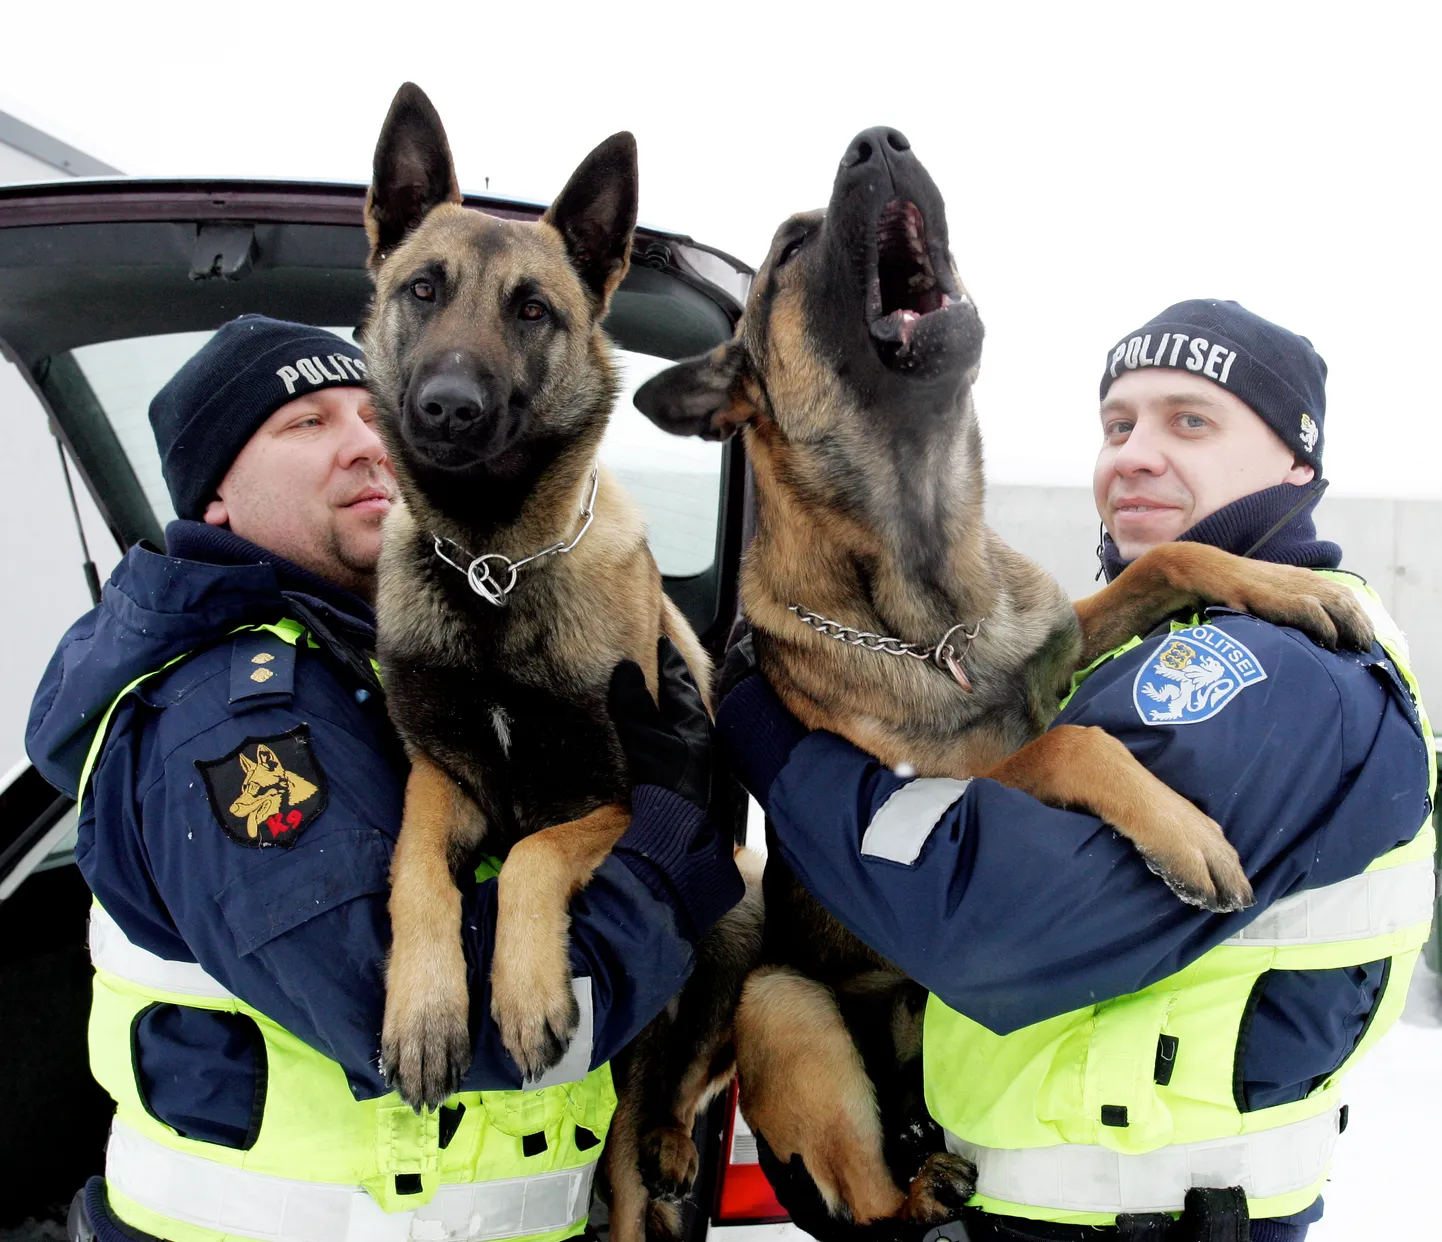 Politseis tegelevad koertega koertejuhid, kuid valla koerte ja kasside pidamise eeskirjast kinnipidamise järelevalvet politseinikud endale ei soovi.